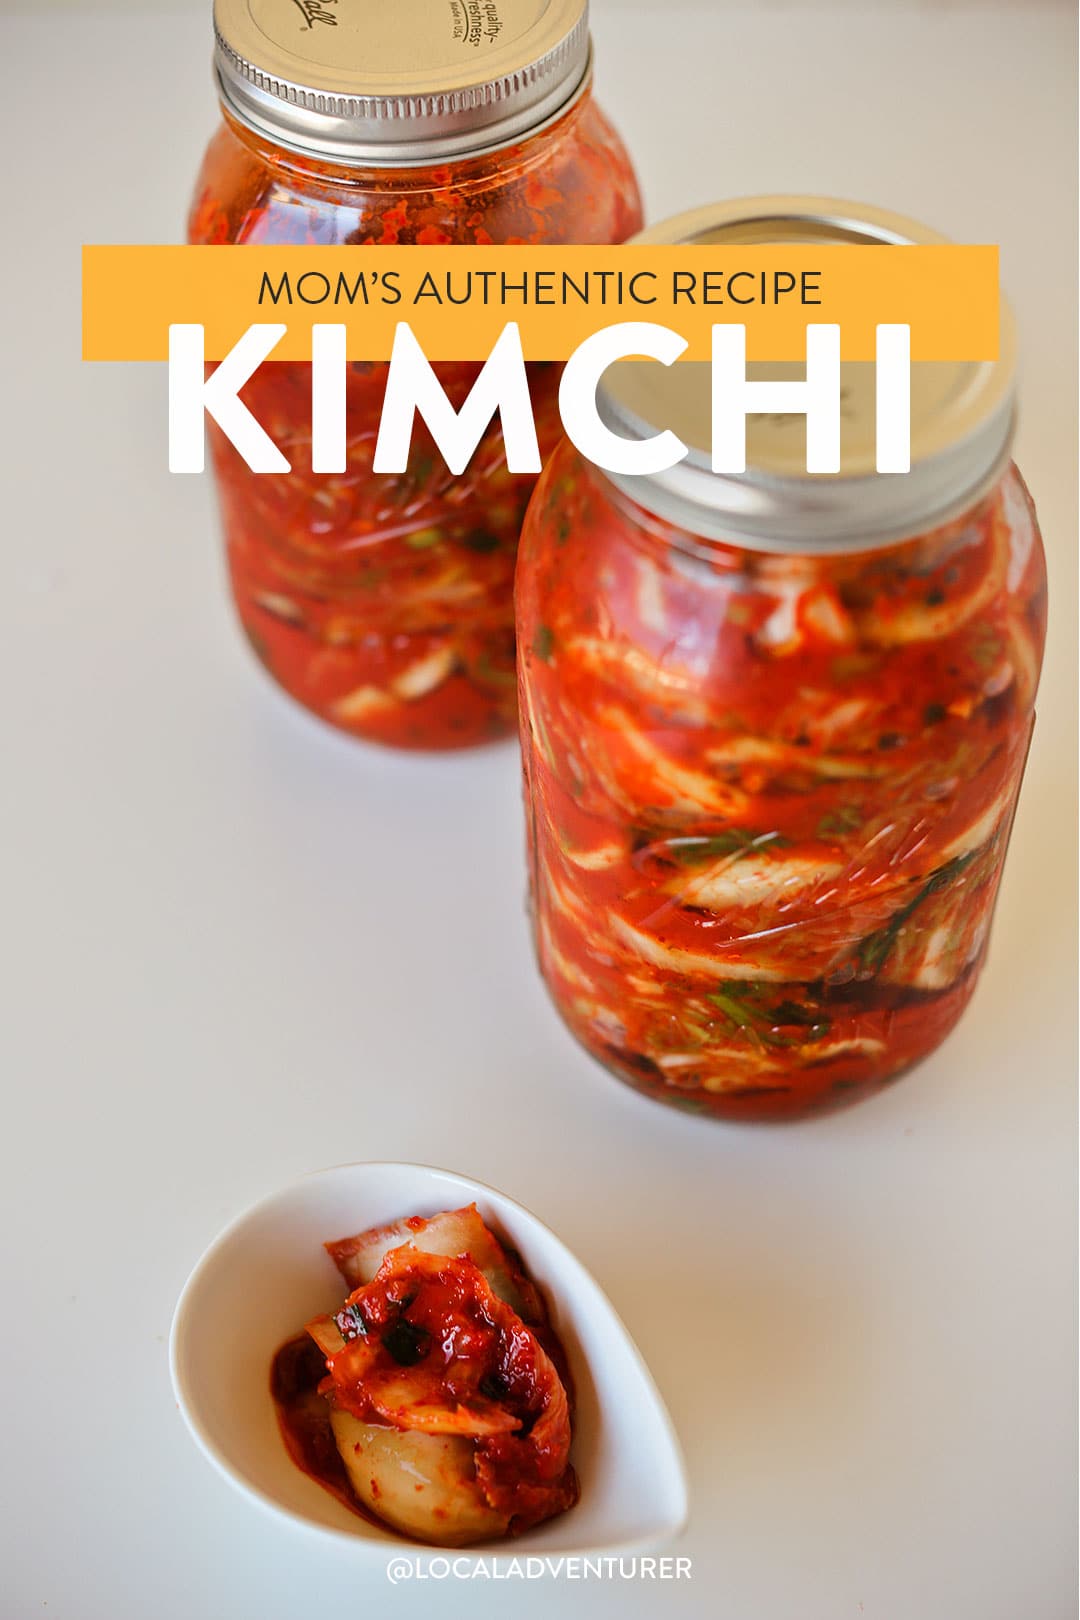 How Do You Make Kimchi